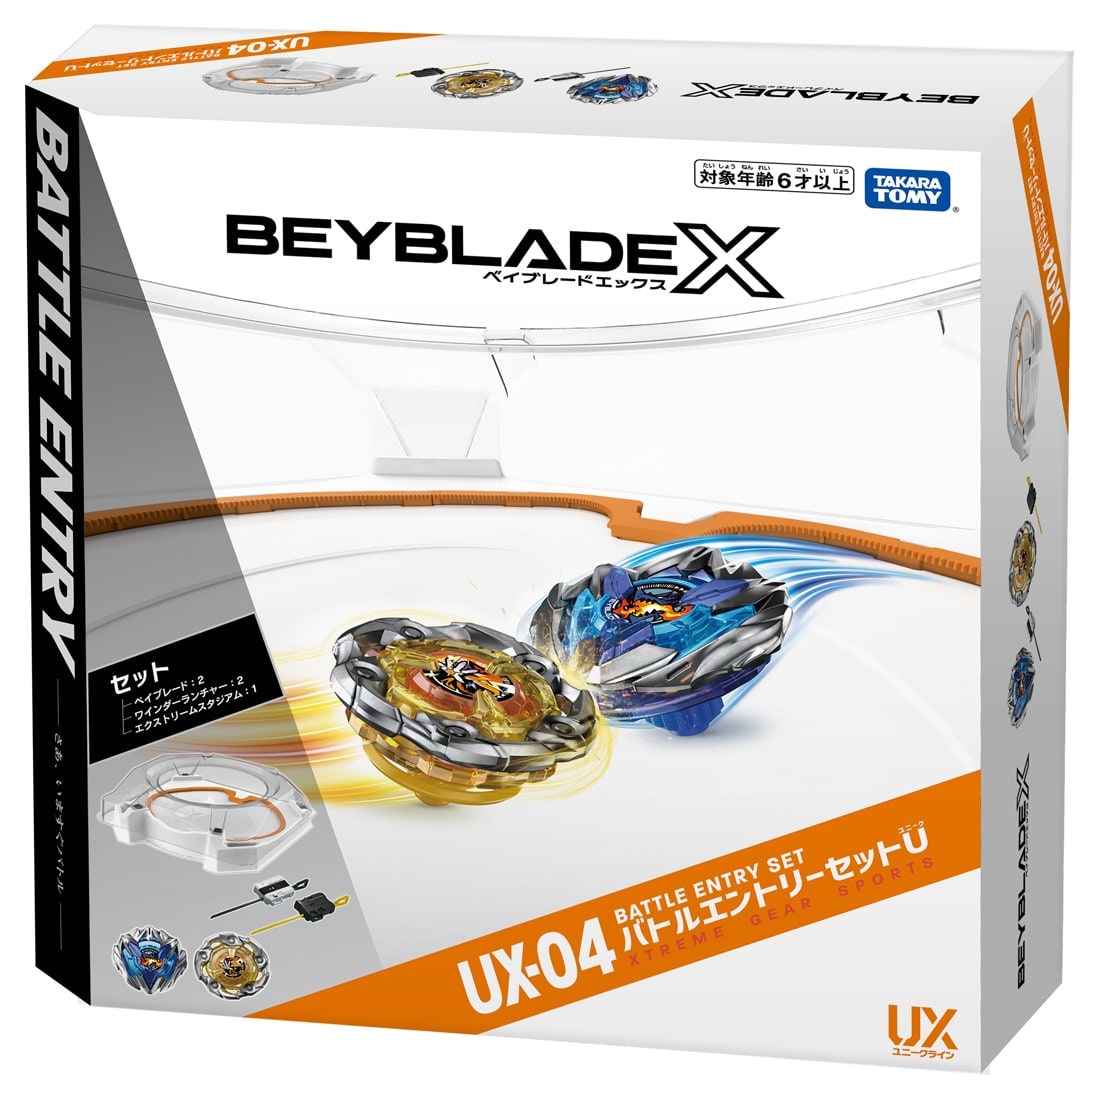 BEYBLADE X BX-06 ブースター ナイトシールド3-80N 【ベイブレードX】【タカラトミー】